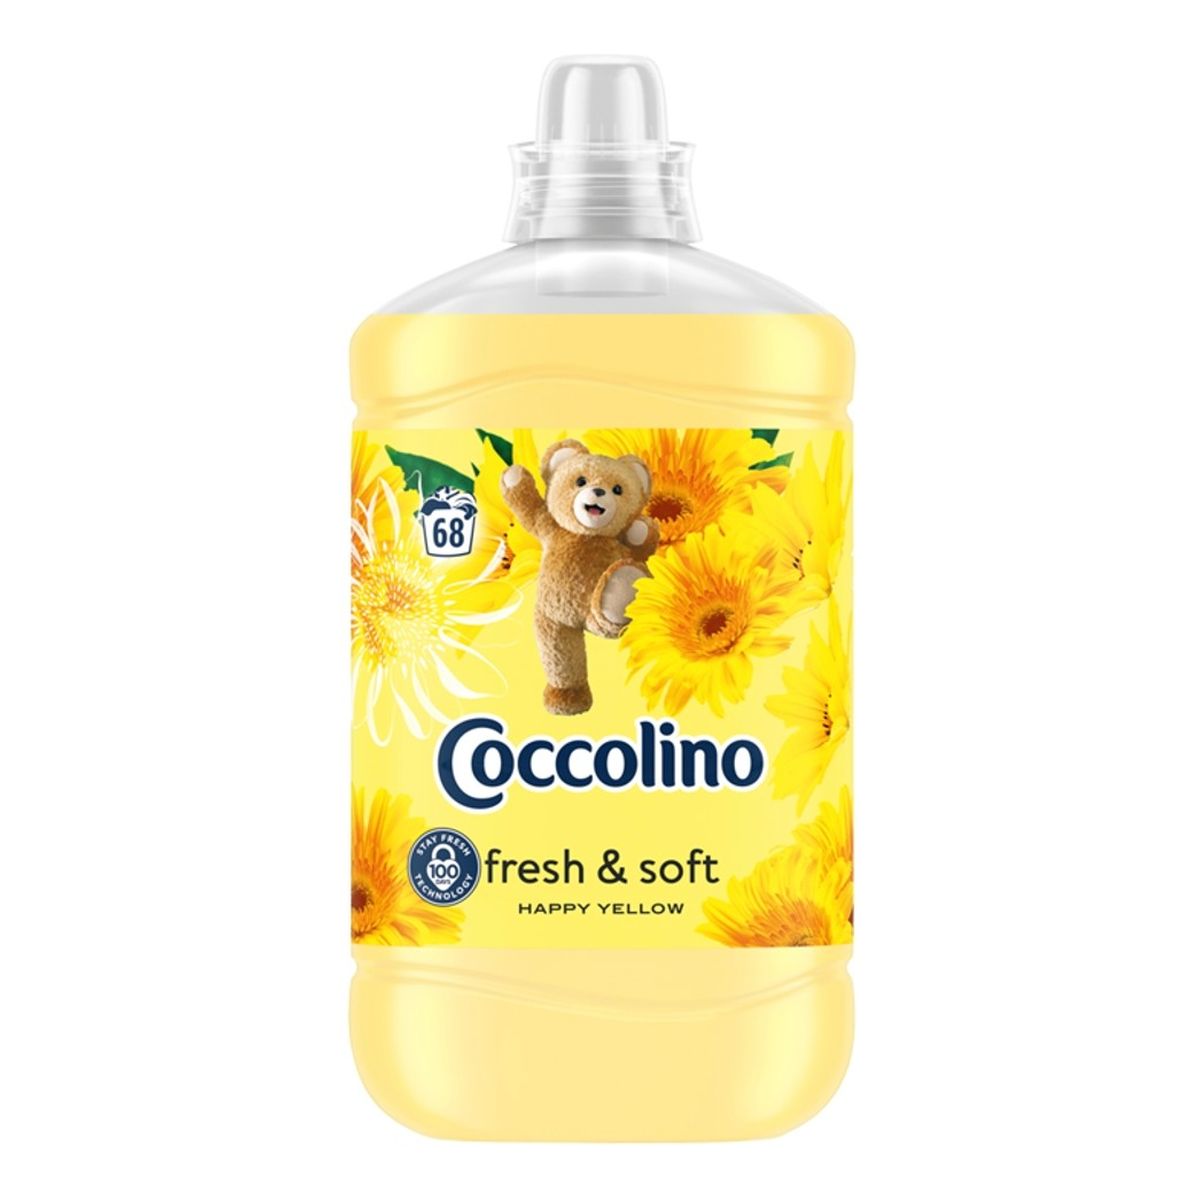 Coccolino Fresh & Soft Płyn do płukania tkanin Happy Yellow 68 prań 1700ml